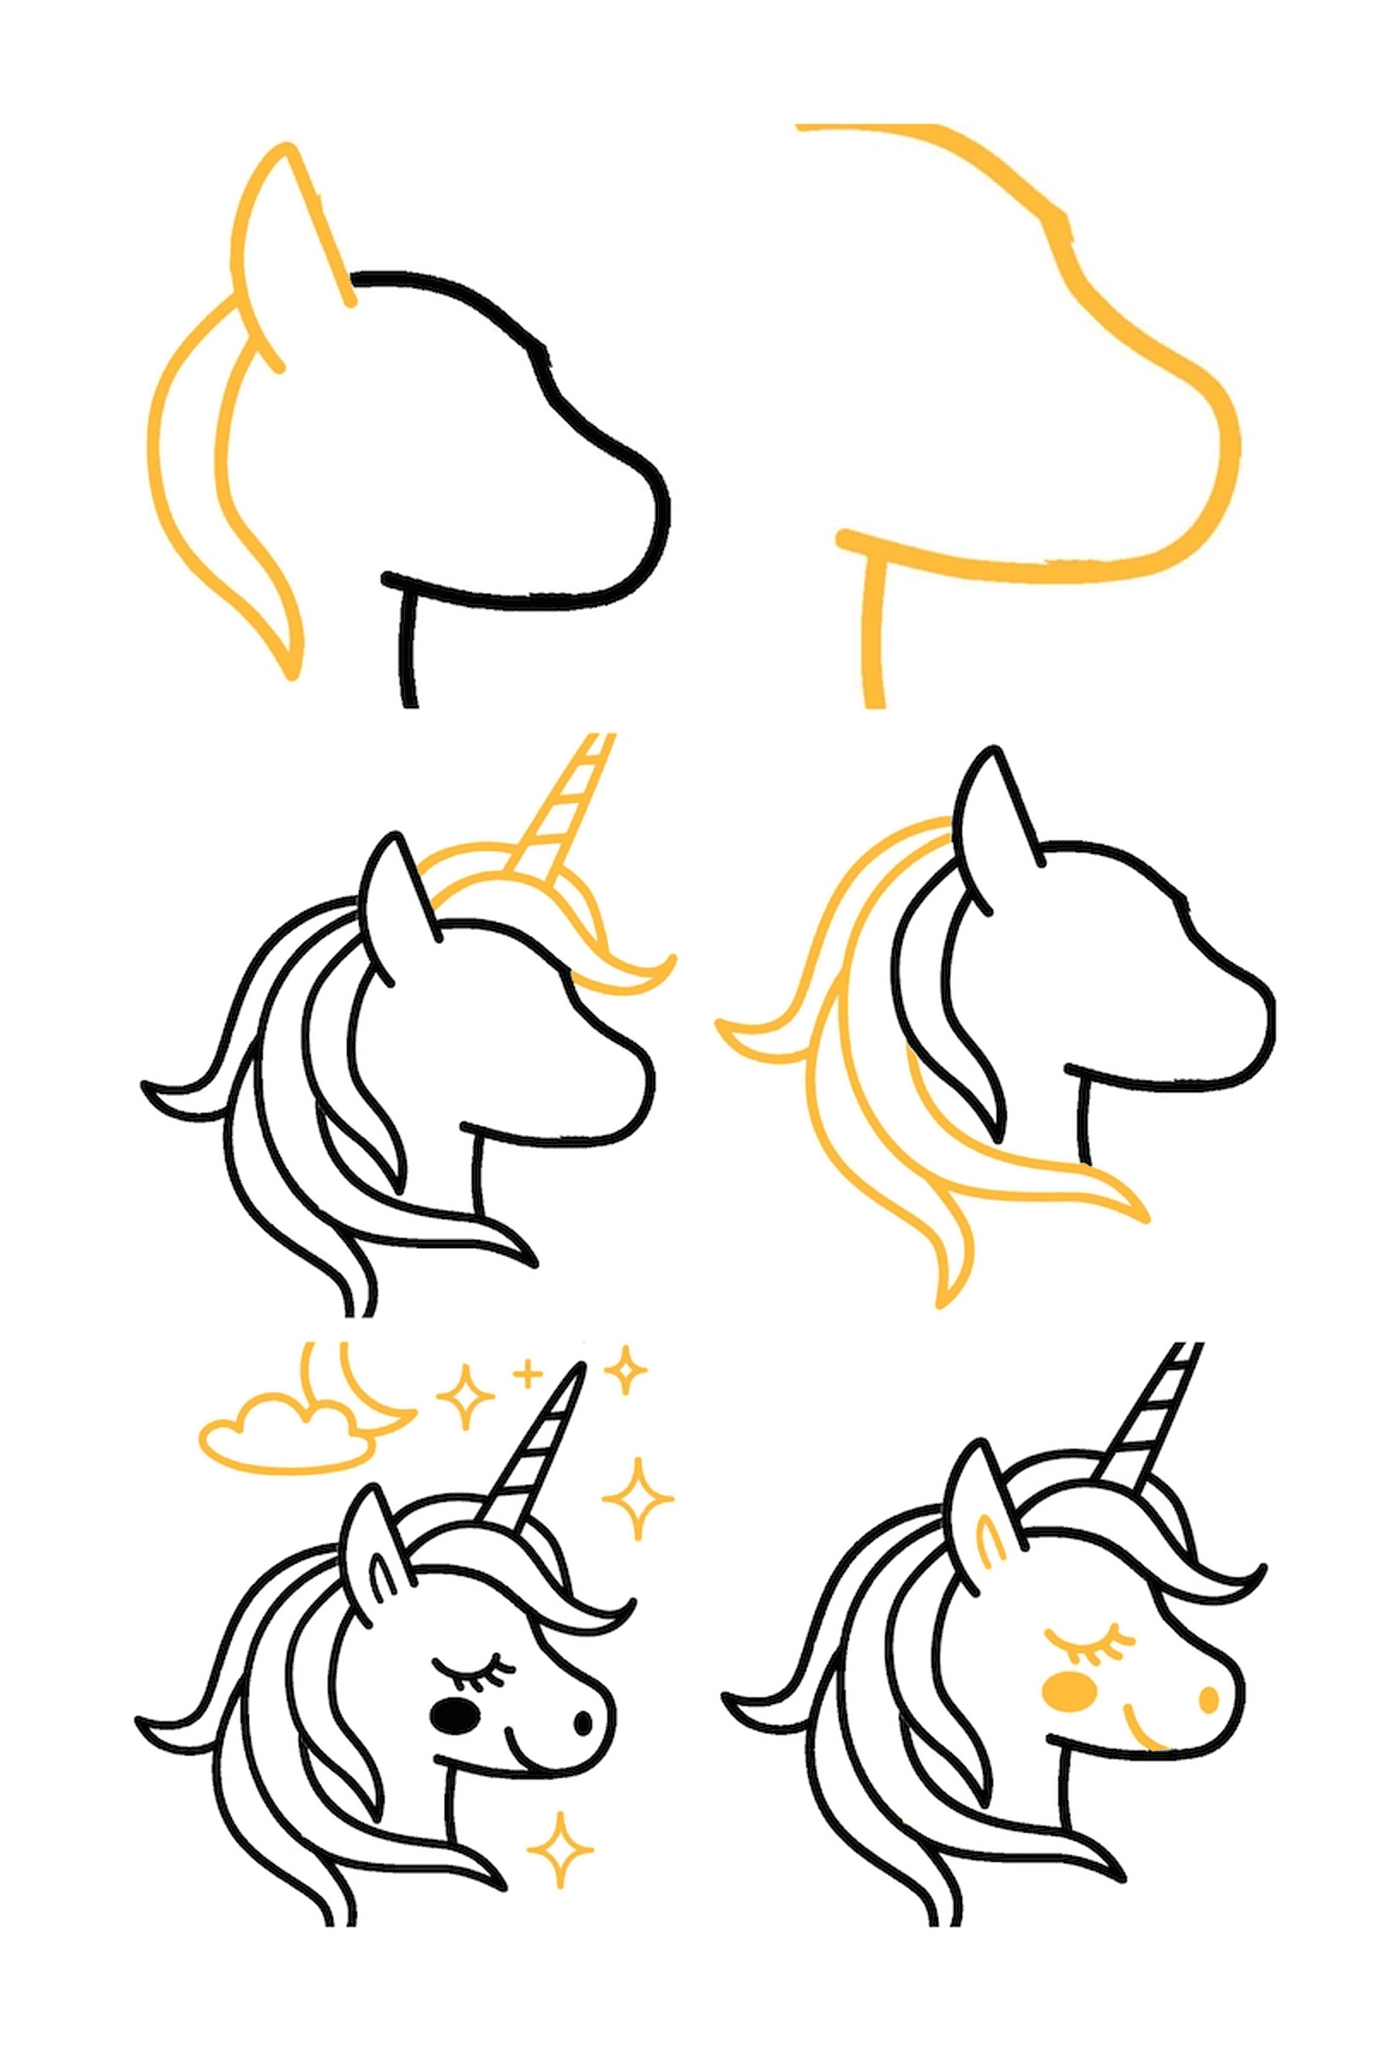 coloriage tuto comment dessiner licorne kawaii simple tete de licorne aux contours noirs avec etoiles nuages